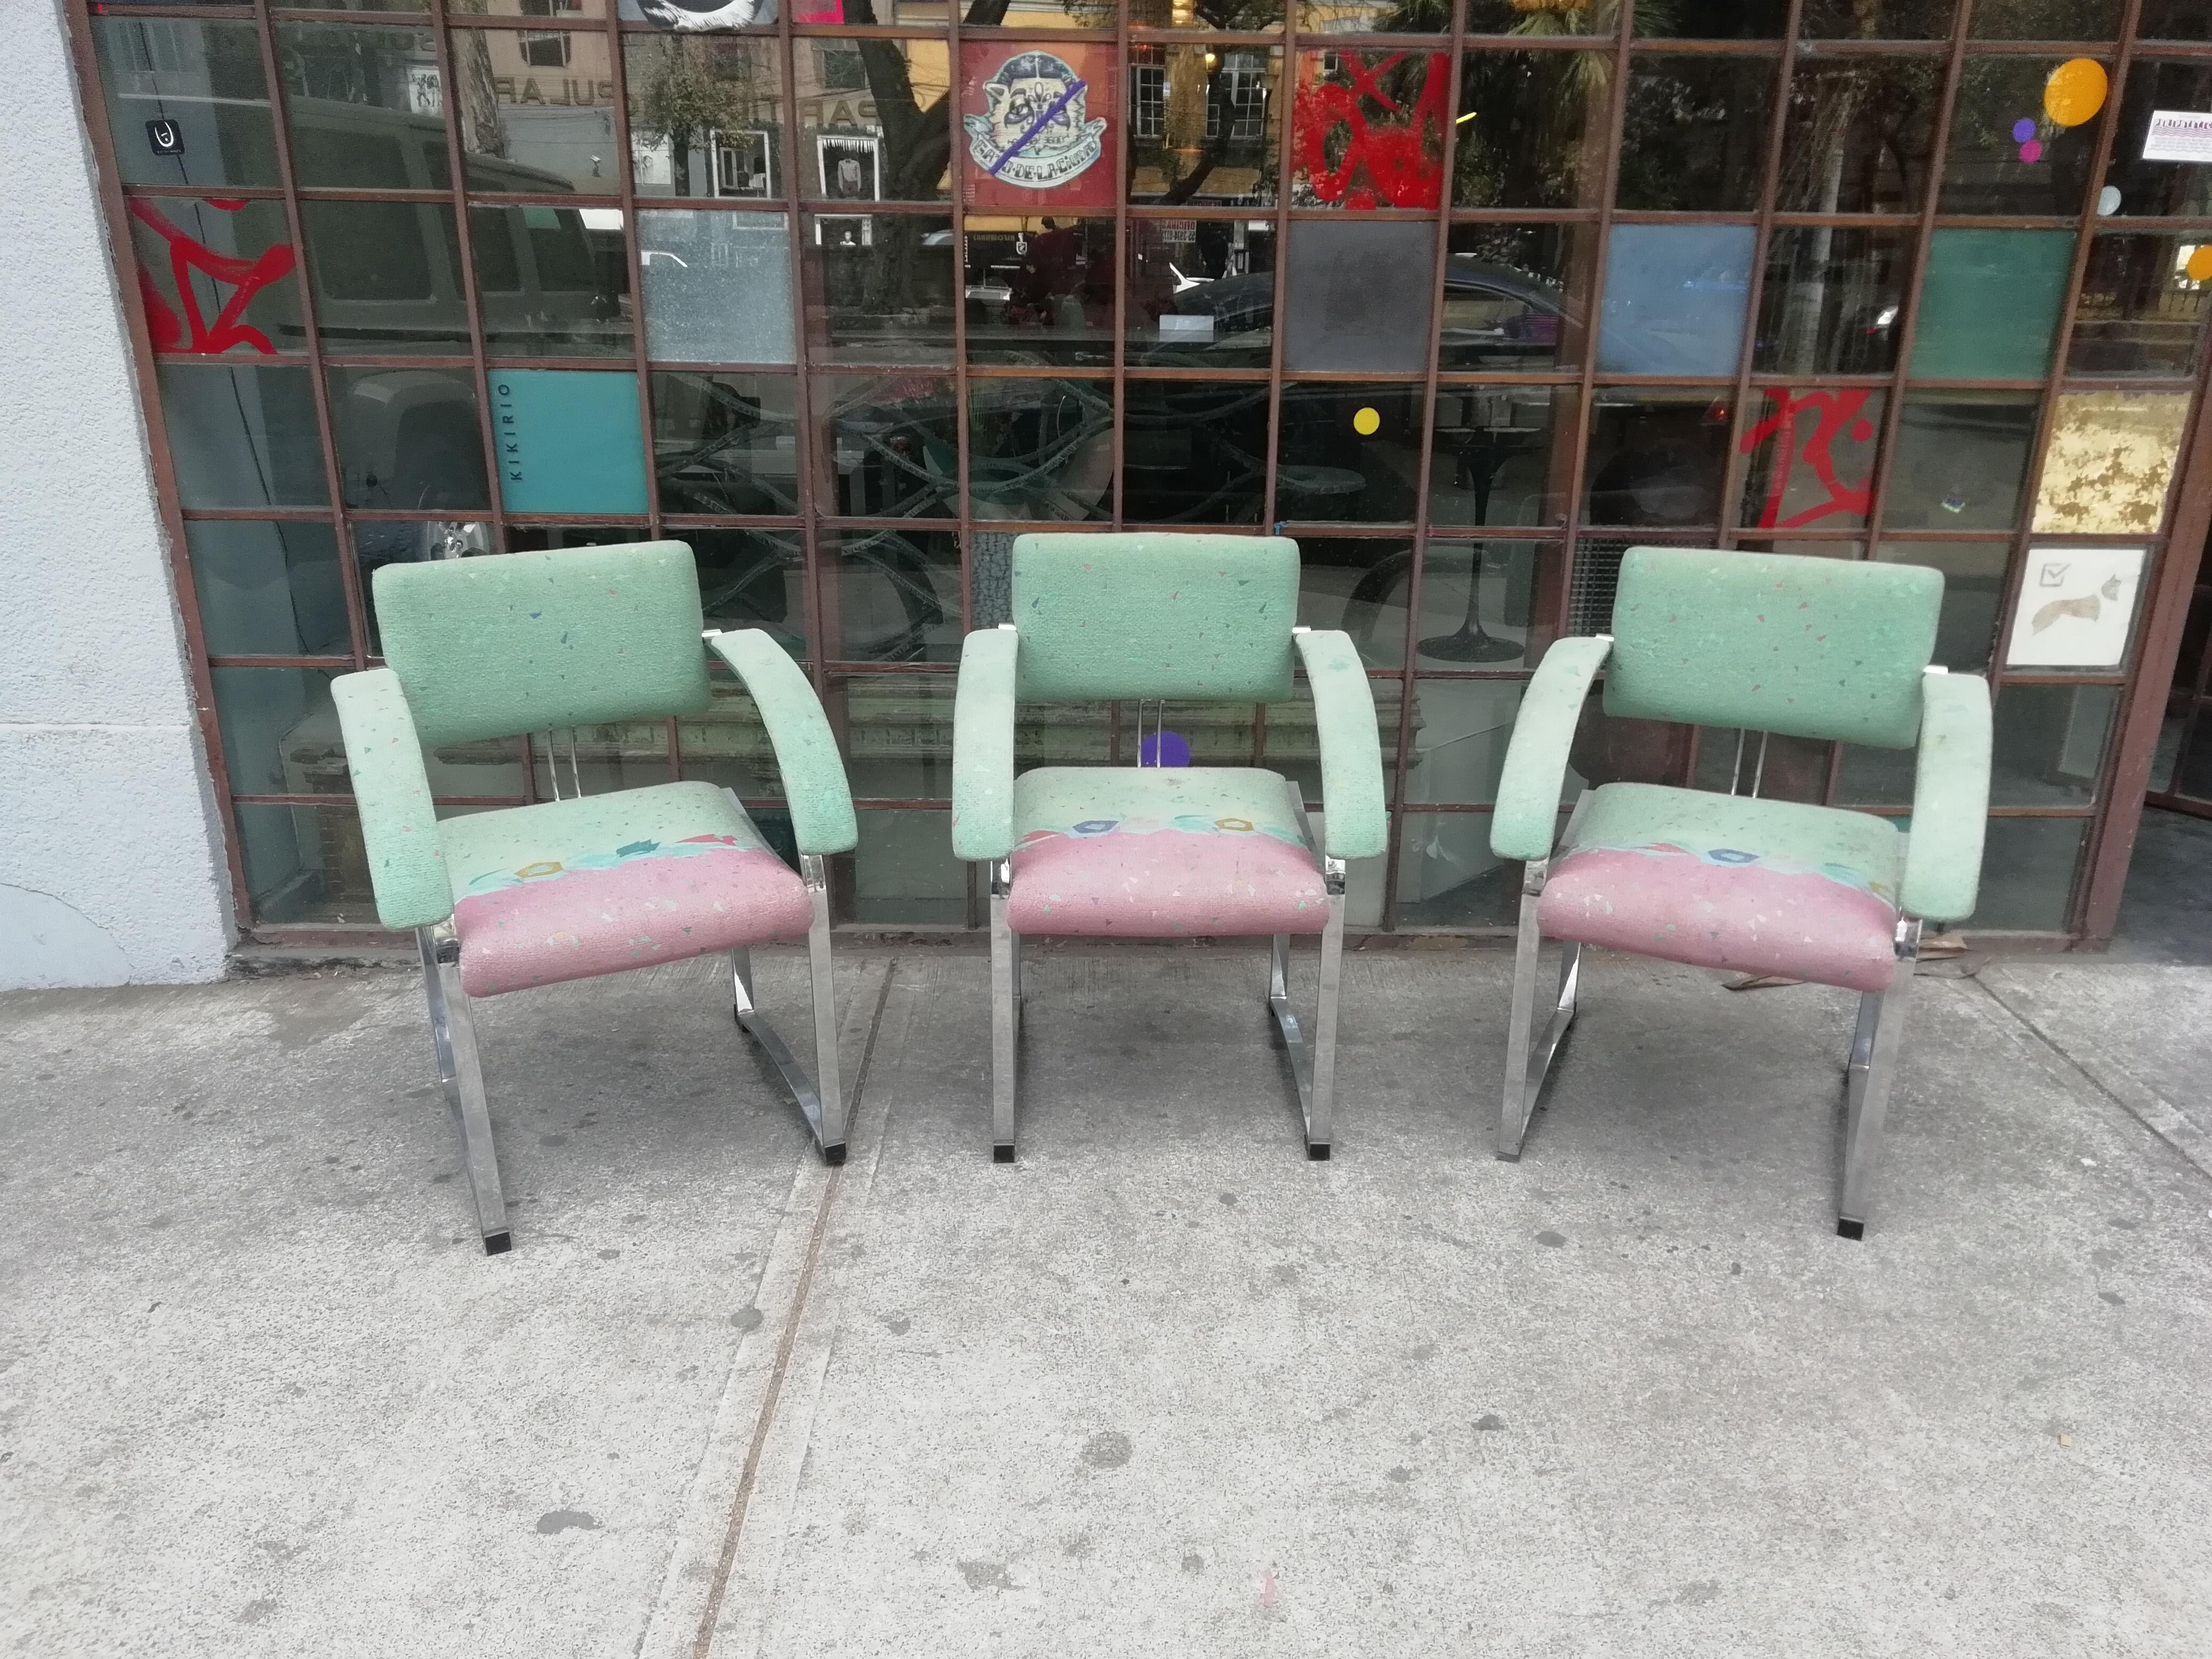 Ein seltener Satz von 6 Sesseln aus verchromtem Stahl von Saporiti Italia. Mit Originalpolsterung in Aquablau, Rosa und Korallenfarben. Verkauft im aktuellen Vintage-Zustand.